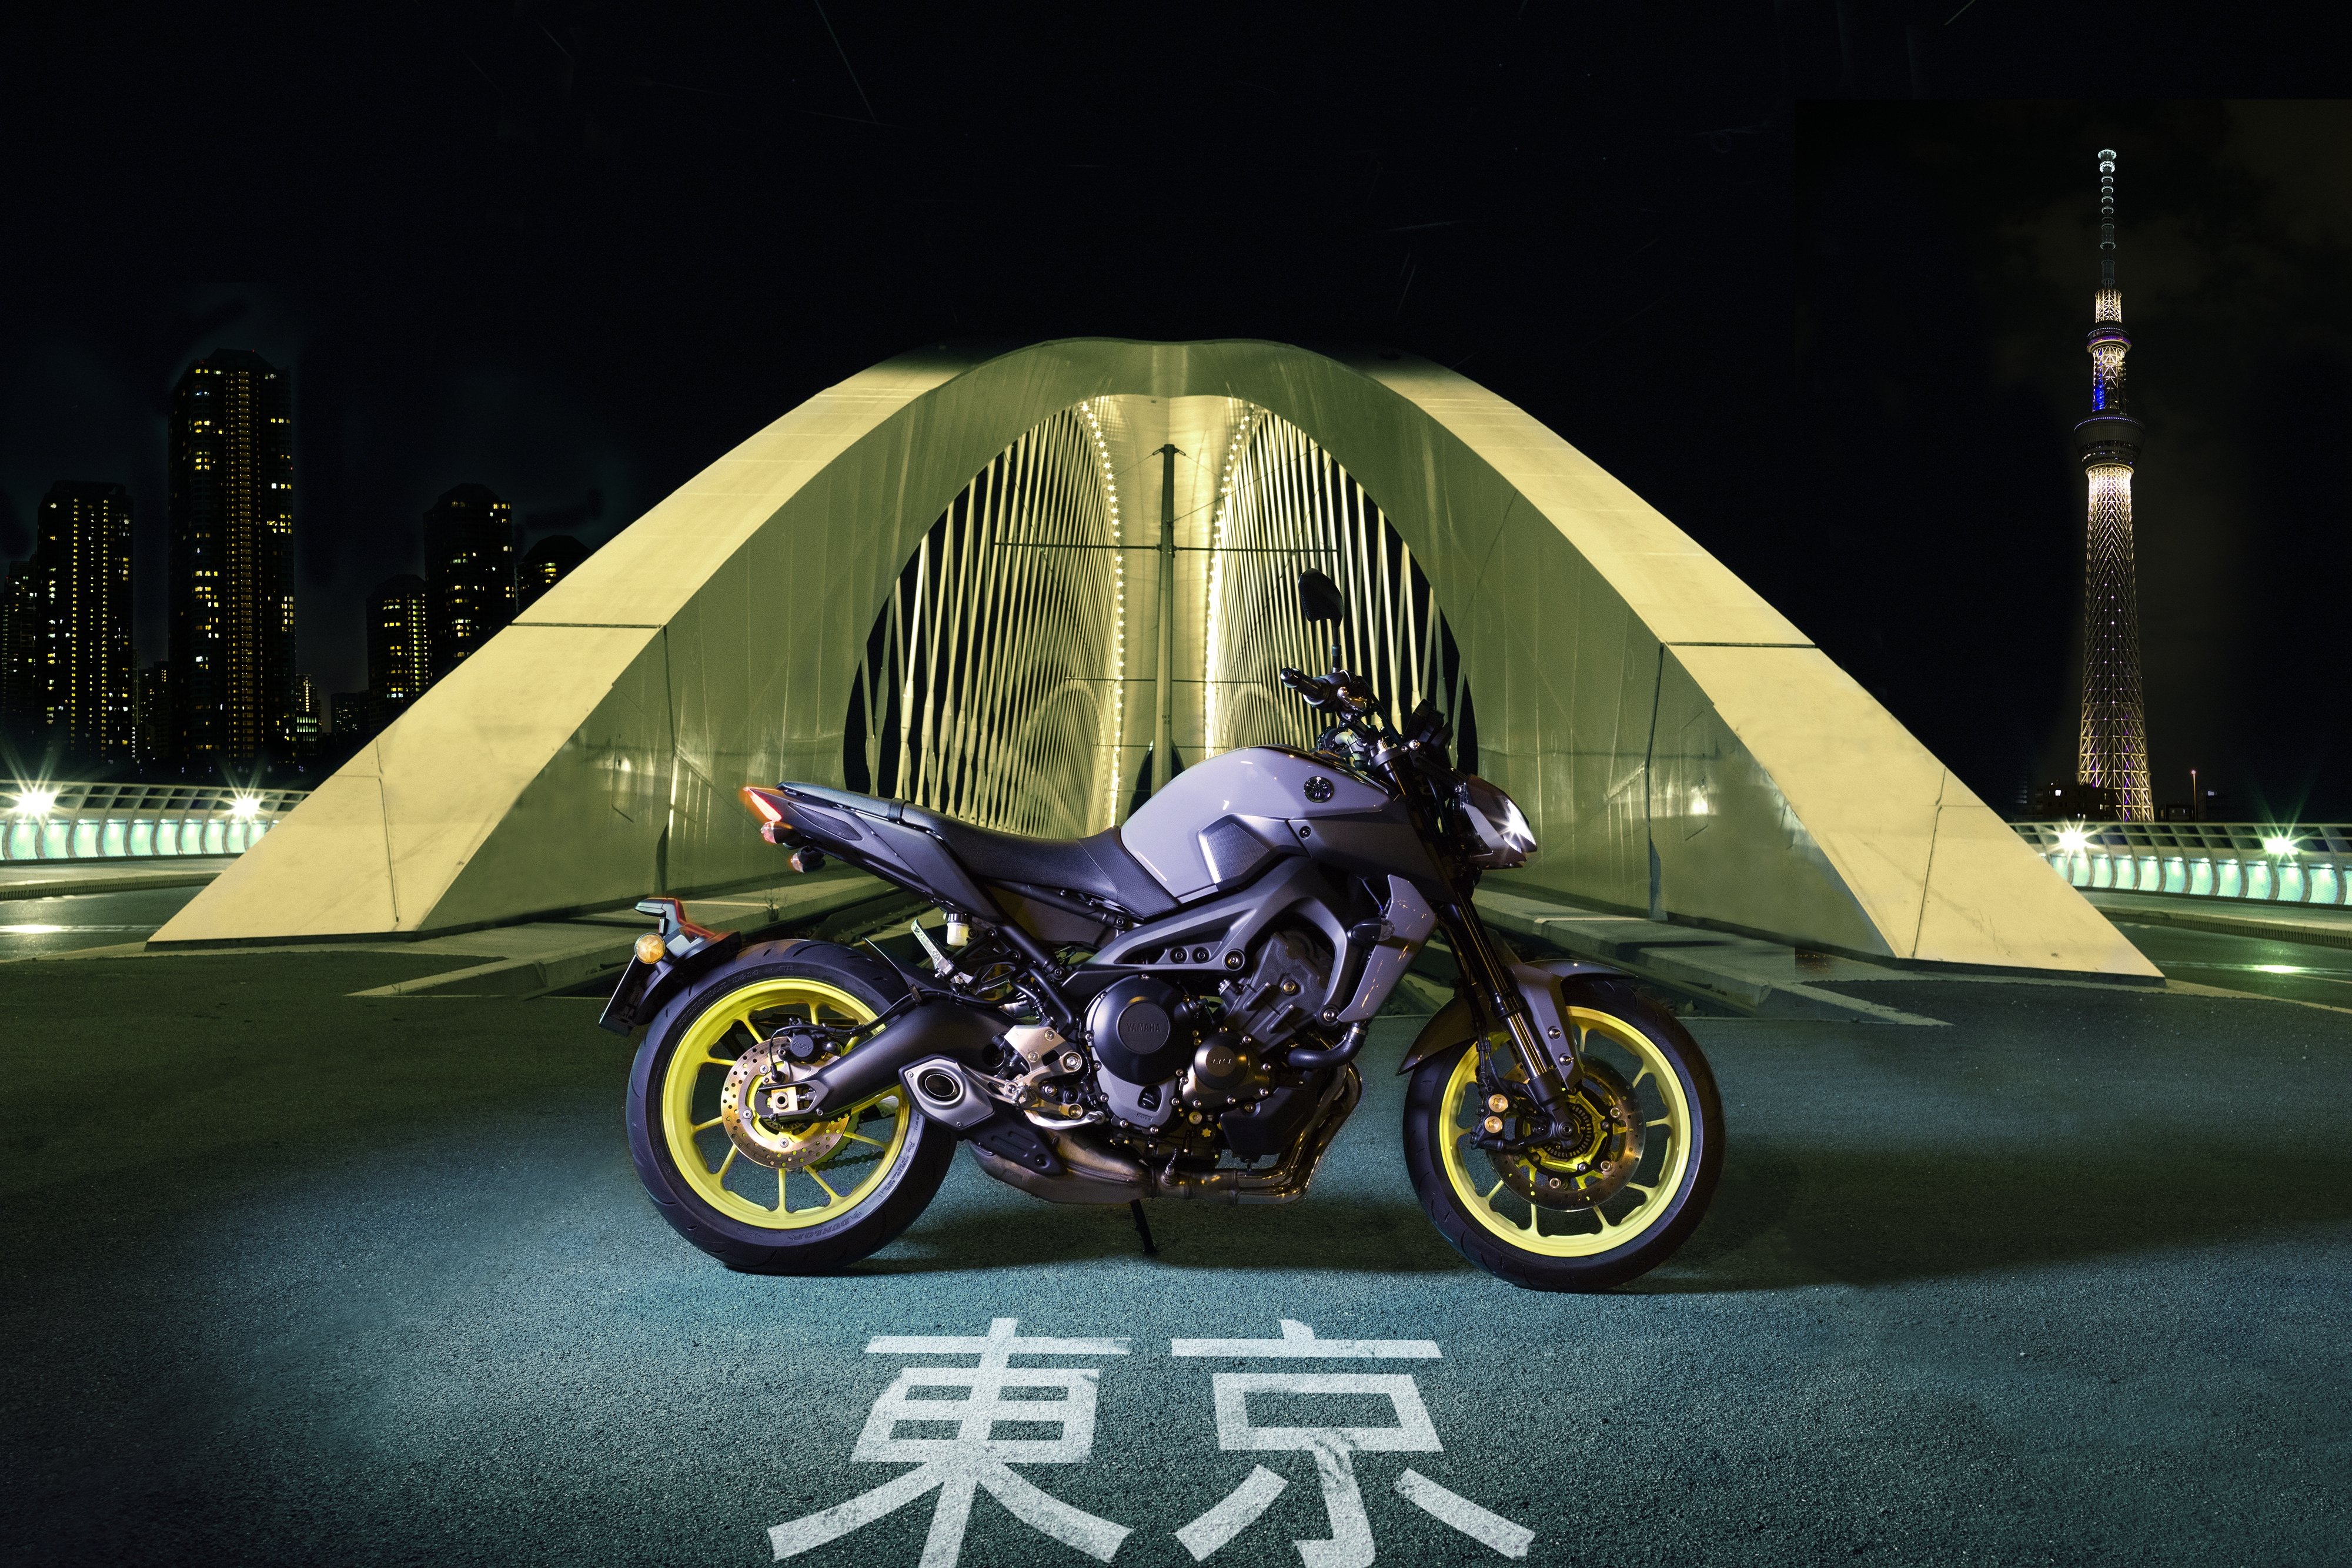 vehicles, motorcycle, yamaha mt 09 Yamaha HQ Background Images